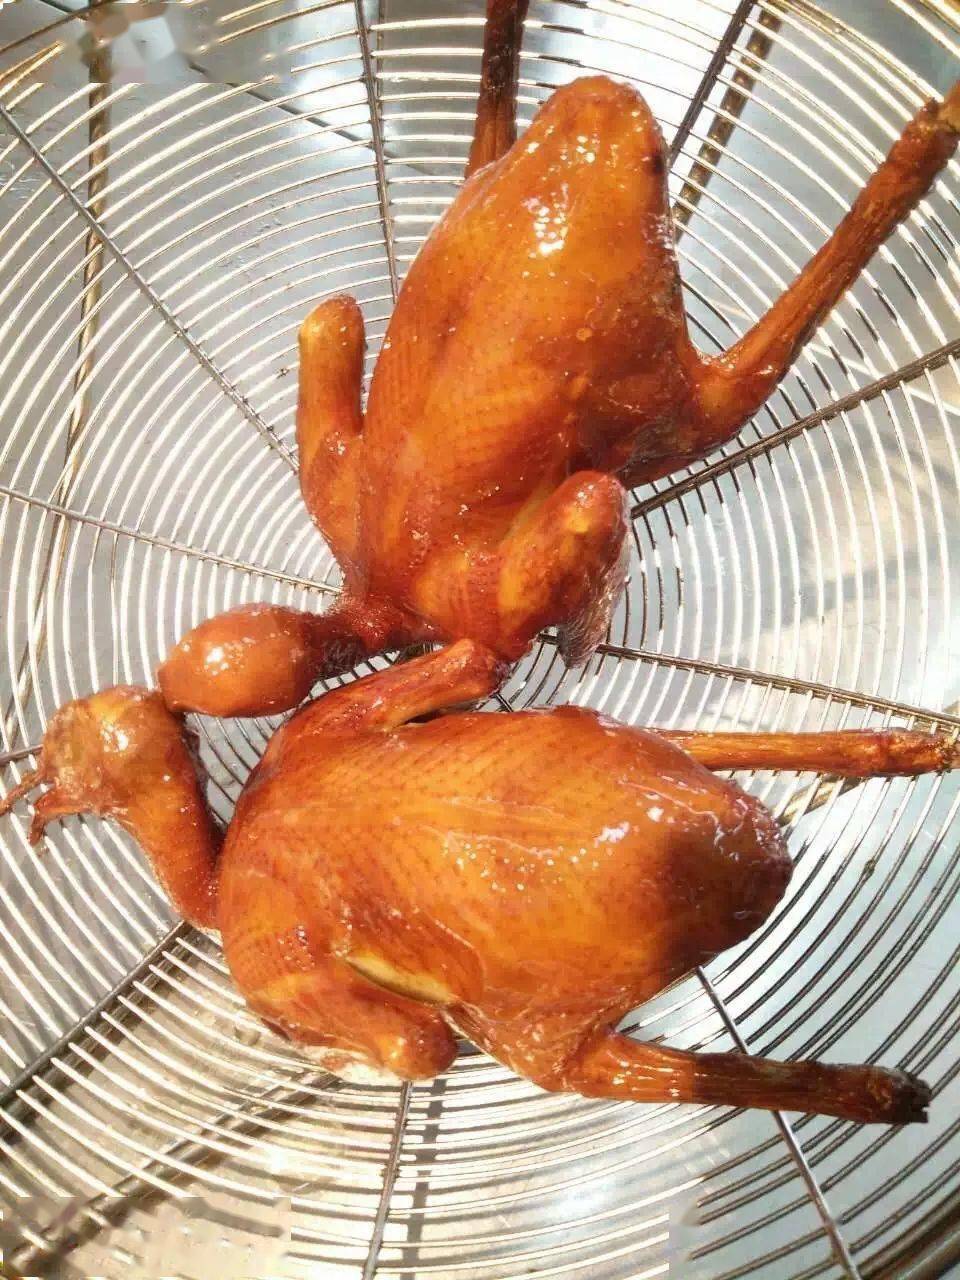 "脆皮乳鸽"是广东菜中的一道传统名菜,随着菜品制作工艺地不断发展